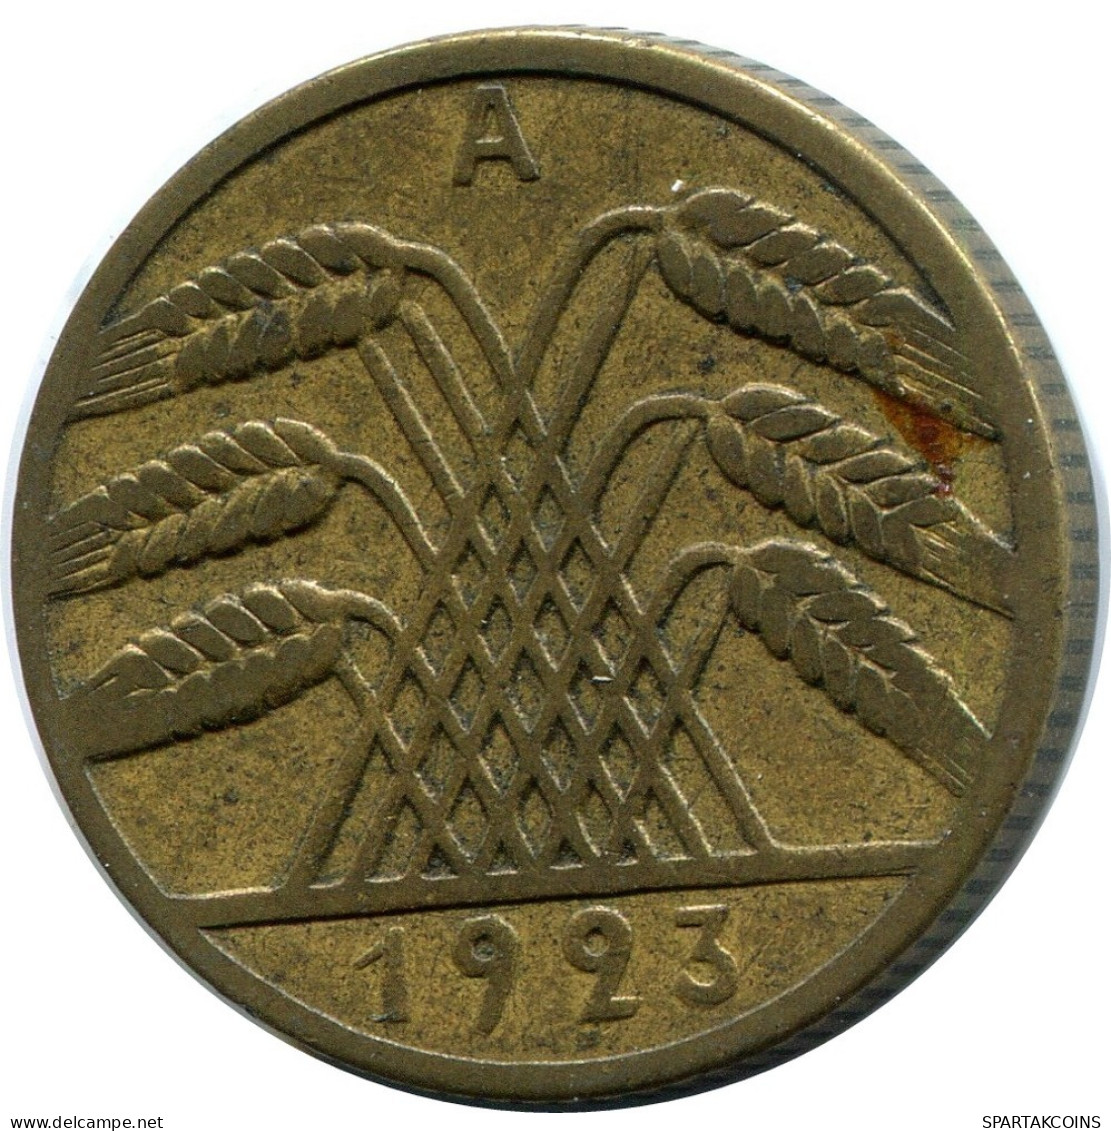 10 RENTENPFENNIG 1923 A GERMANY Coin #DB930.U.A - 10 Rentenpfennig & 10 Reichspfennig